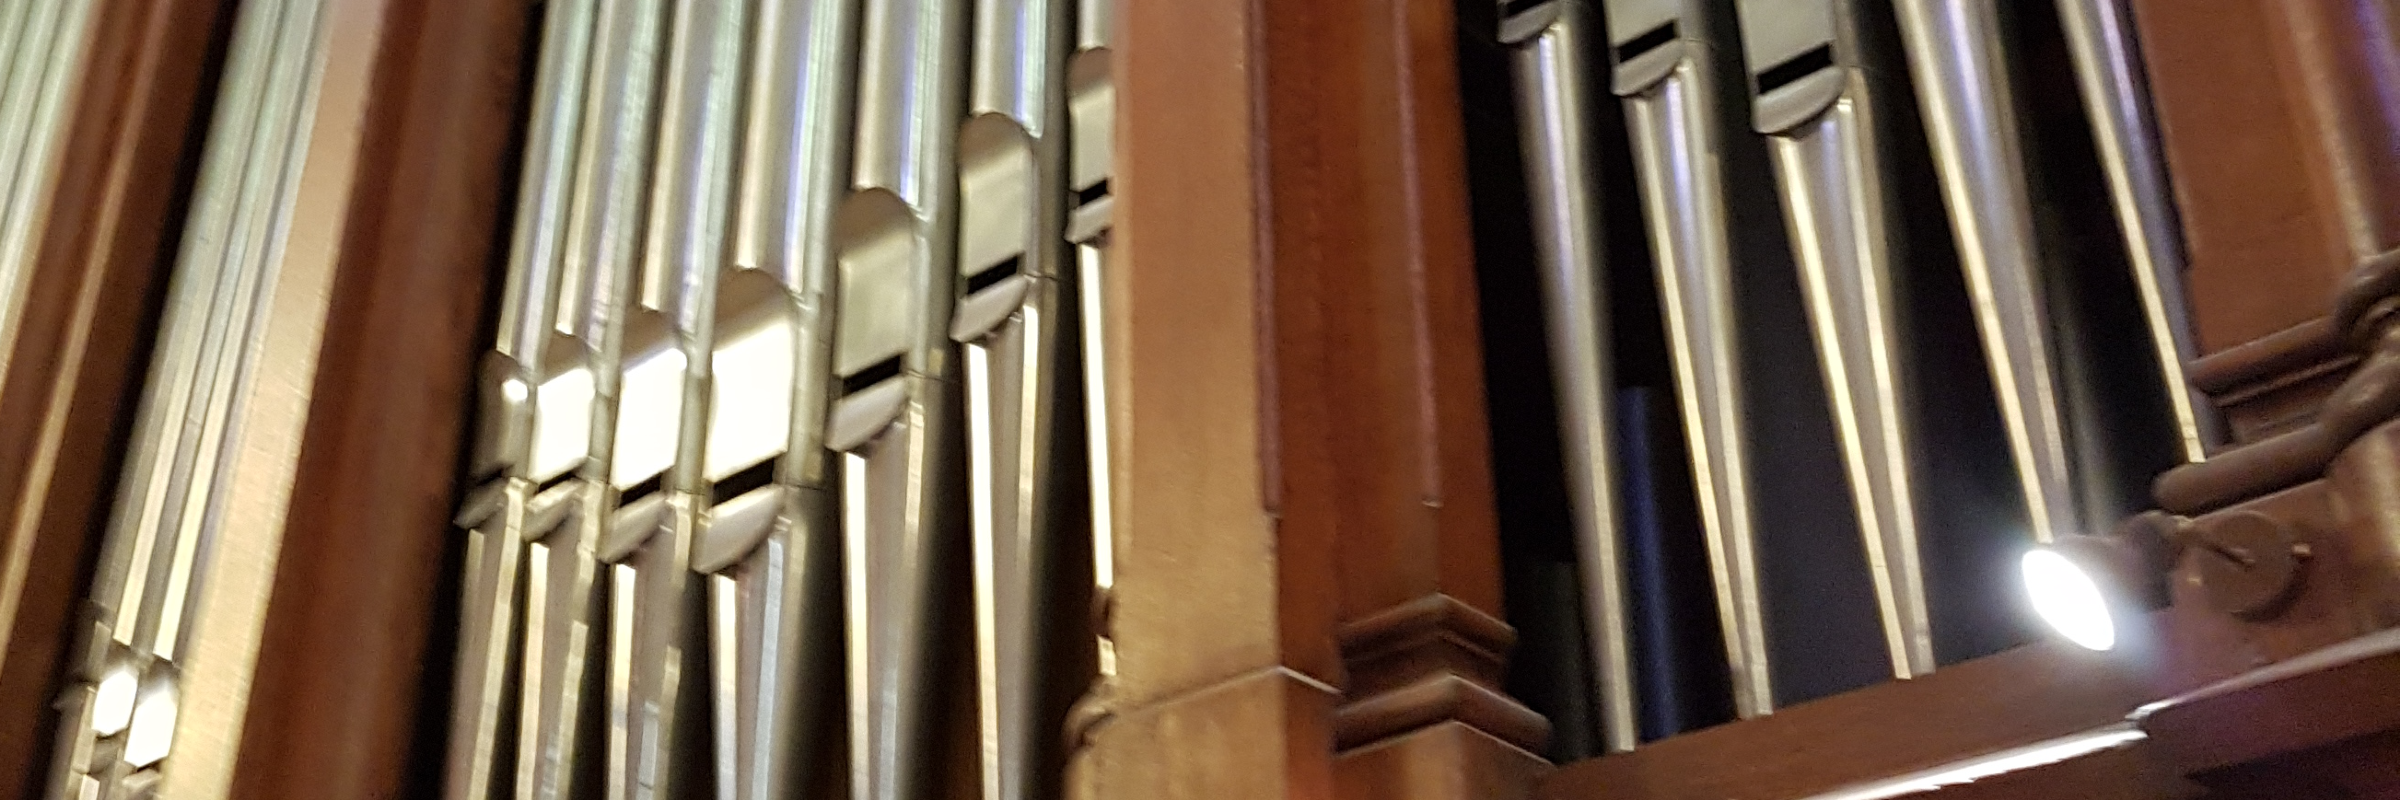 organiste liturgique, musicien Classique en représentation à Marne - photo de couverture n° 4